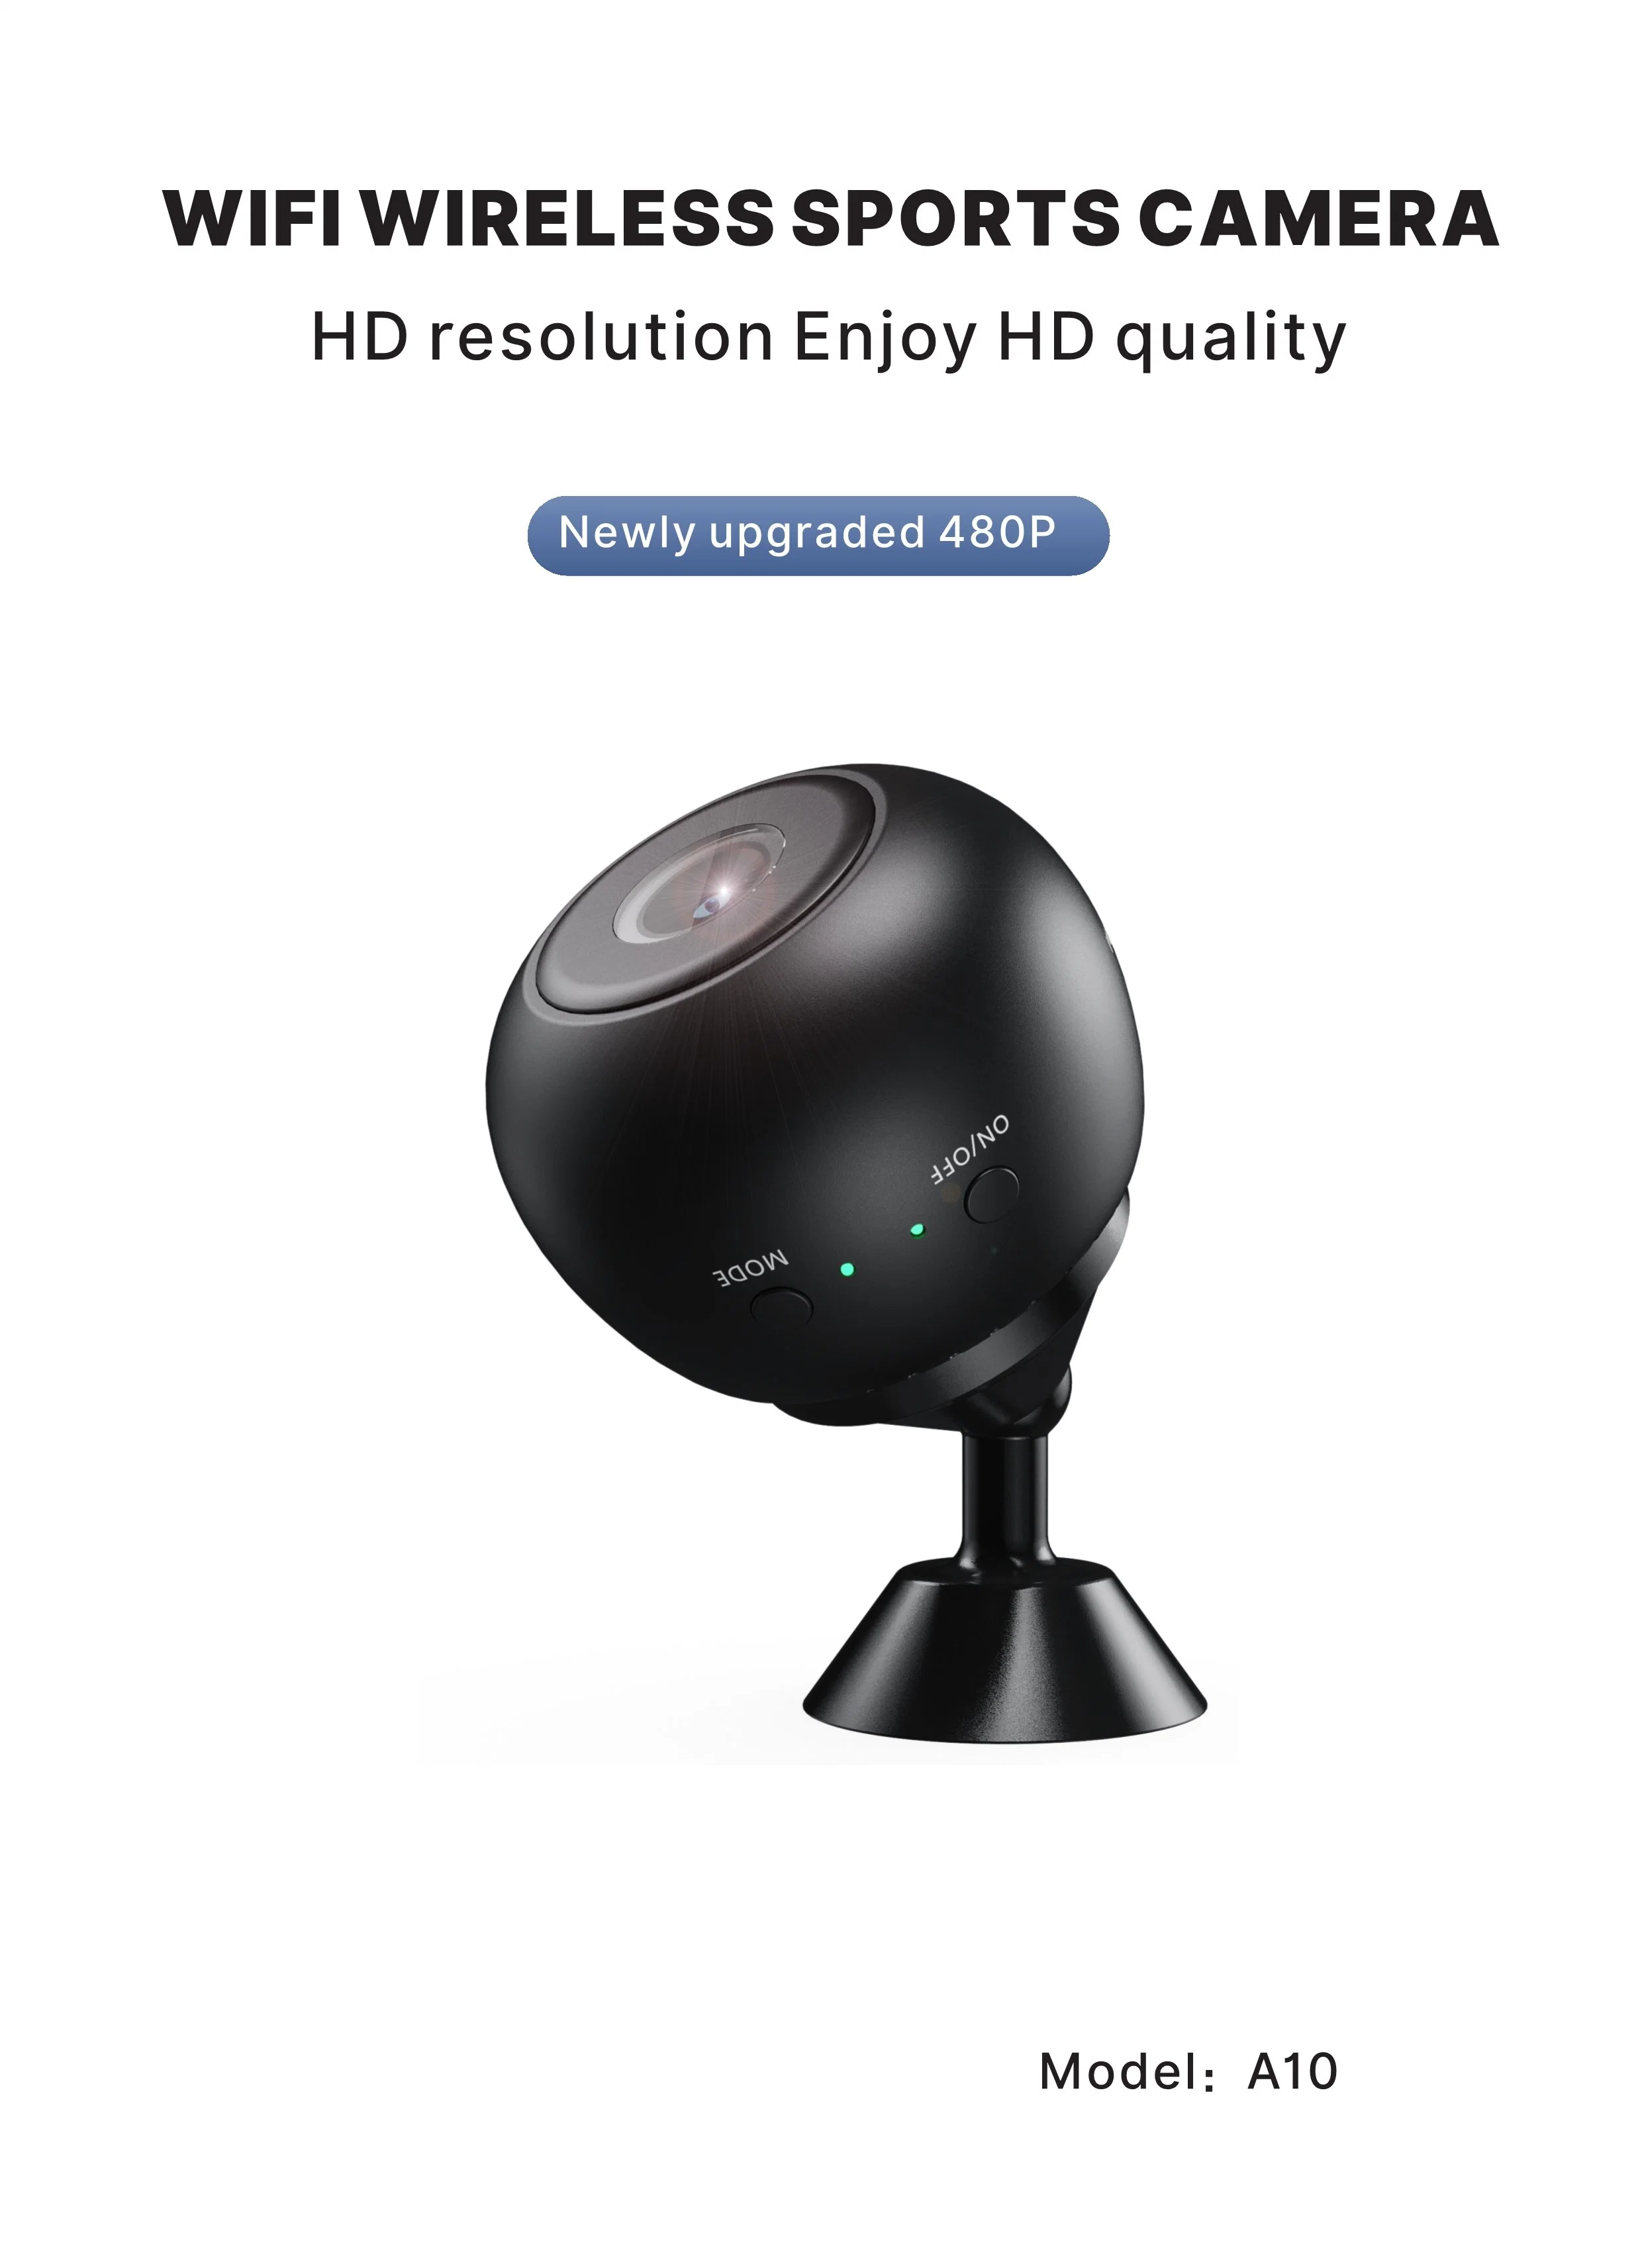 A10 Mini Cámara WiFi Supervisión inalámbrica Protección de seguridad Monitor remoto Videocámaras videovigilancia Smart Home